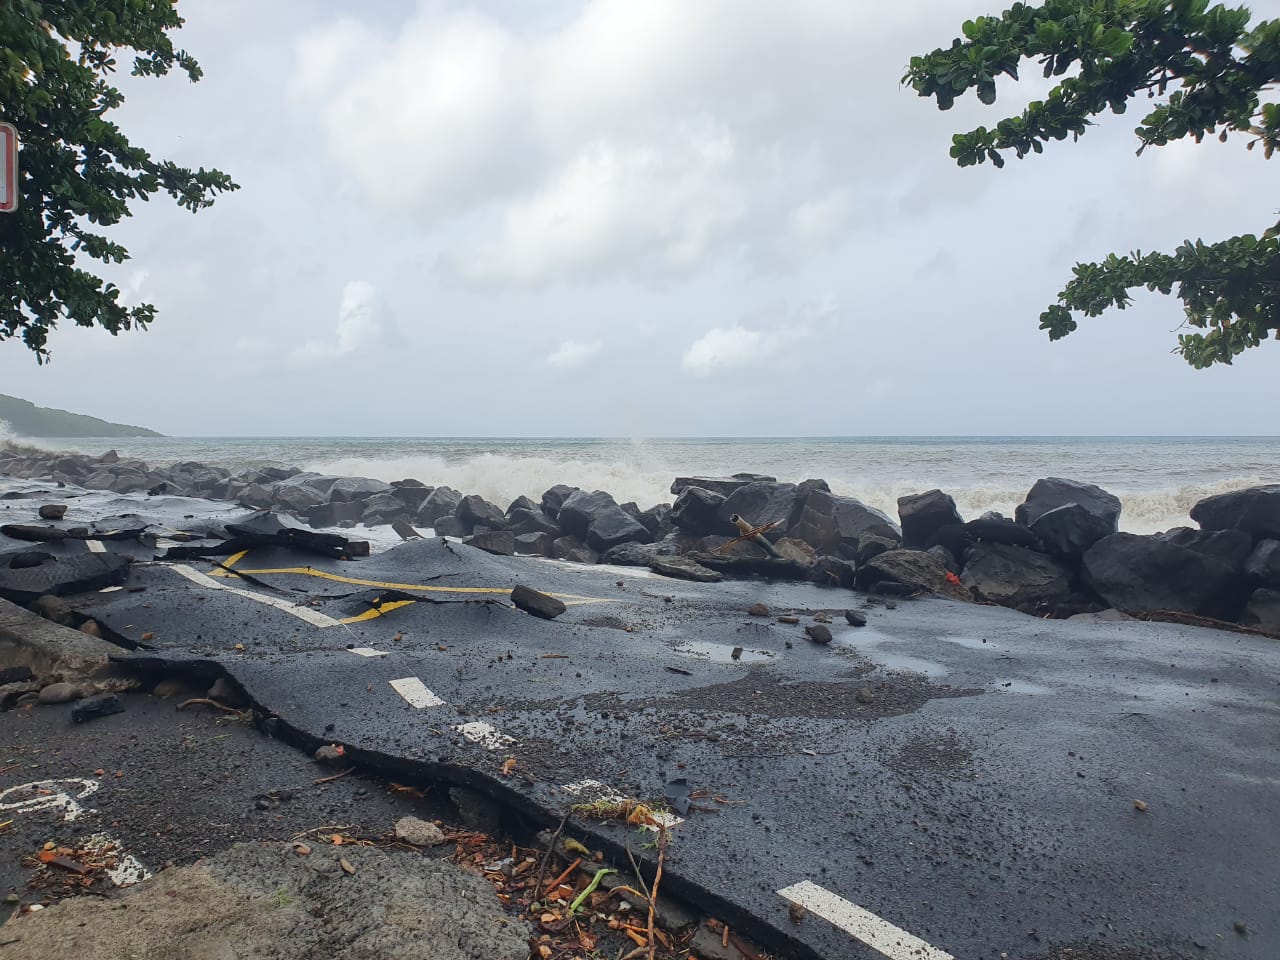     [EN IMAGES] Guadeloupe : l'état des lieux des dégâts de l’ouragan Béryl en Basse-Terre

